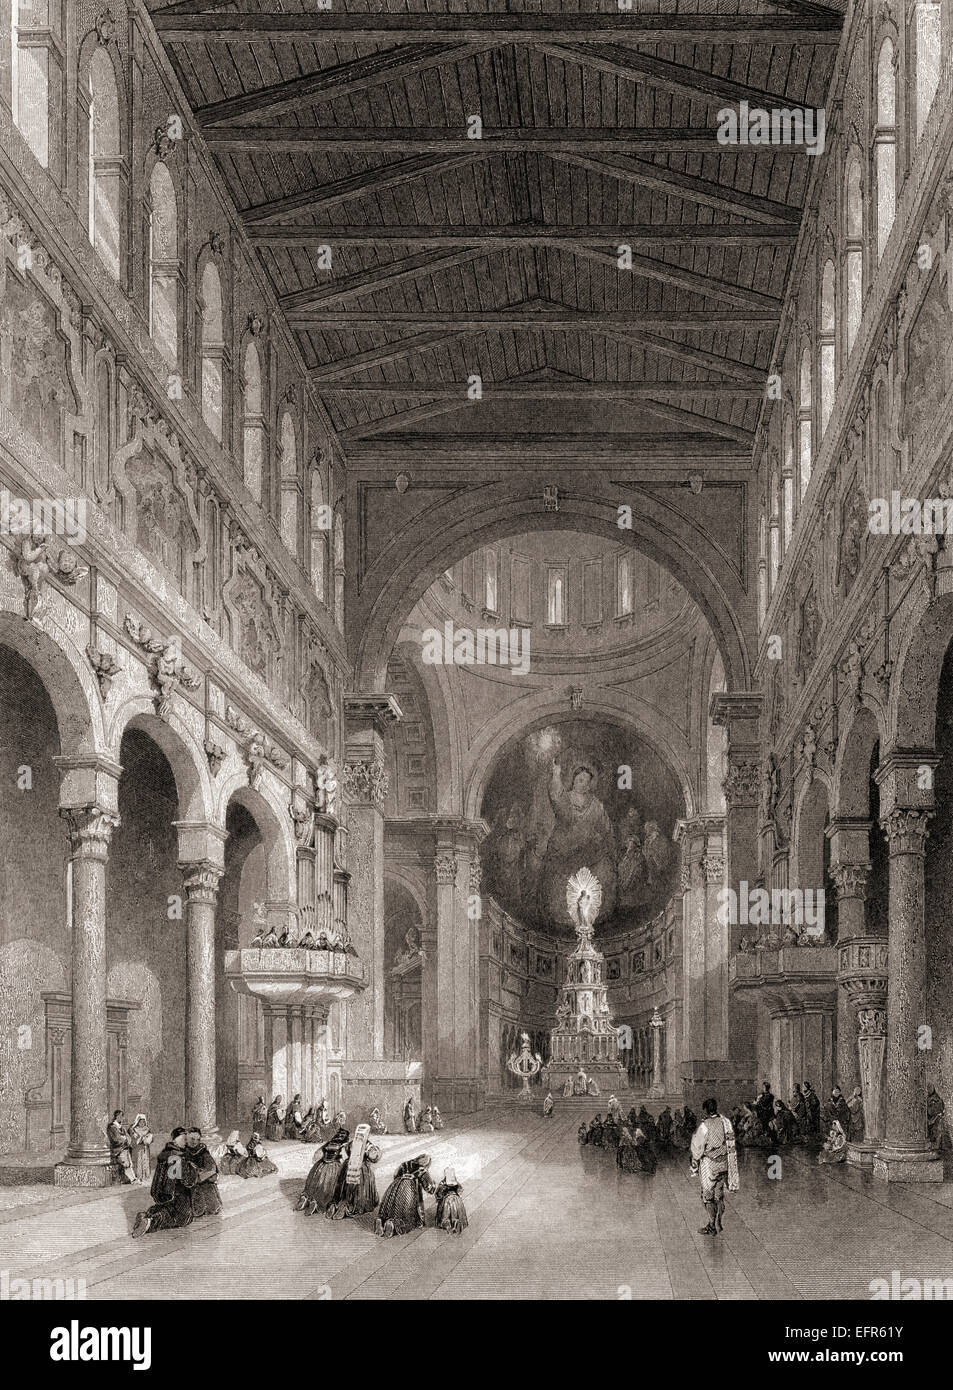 Innenraum der Kathedrale in Messina, Sizilien, Italien.  Von einem 19. Jahrhundert Gravur. Stockfoto